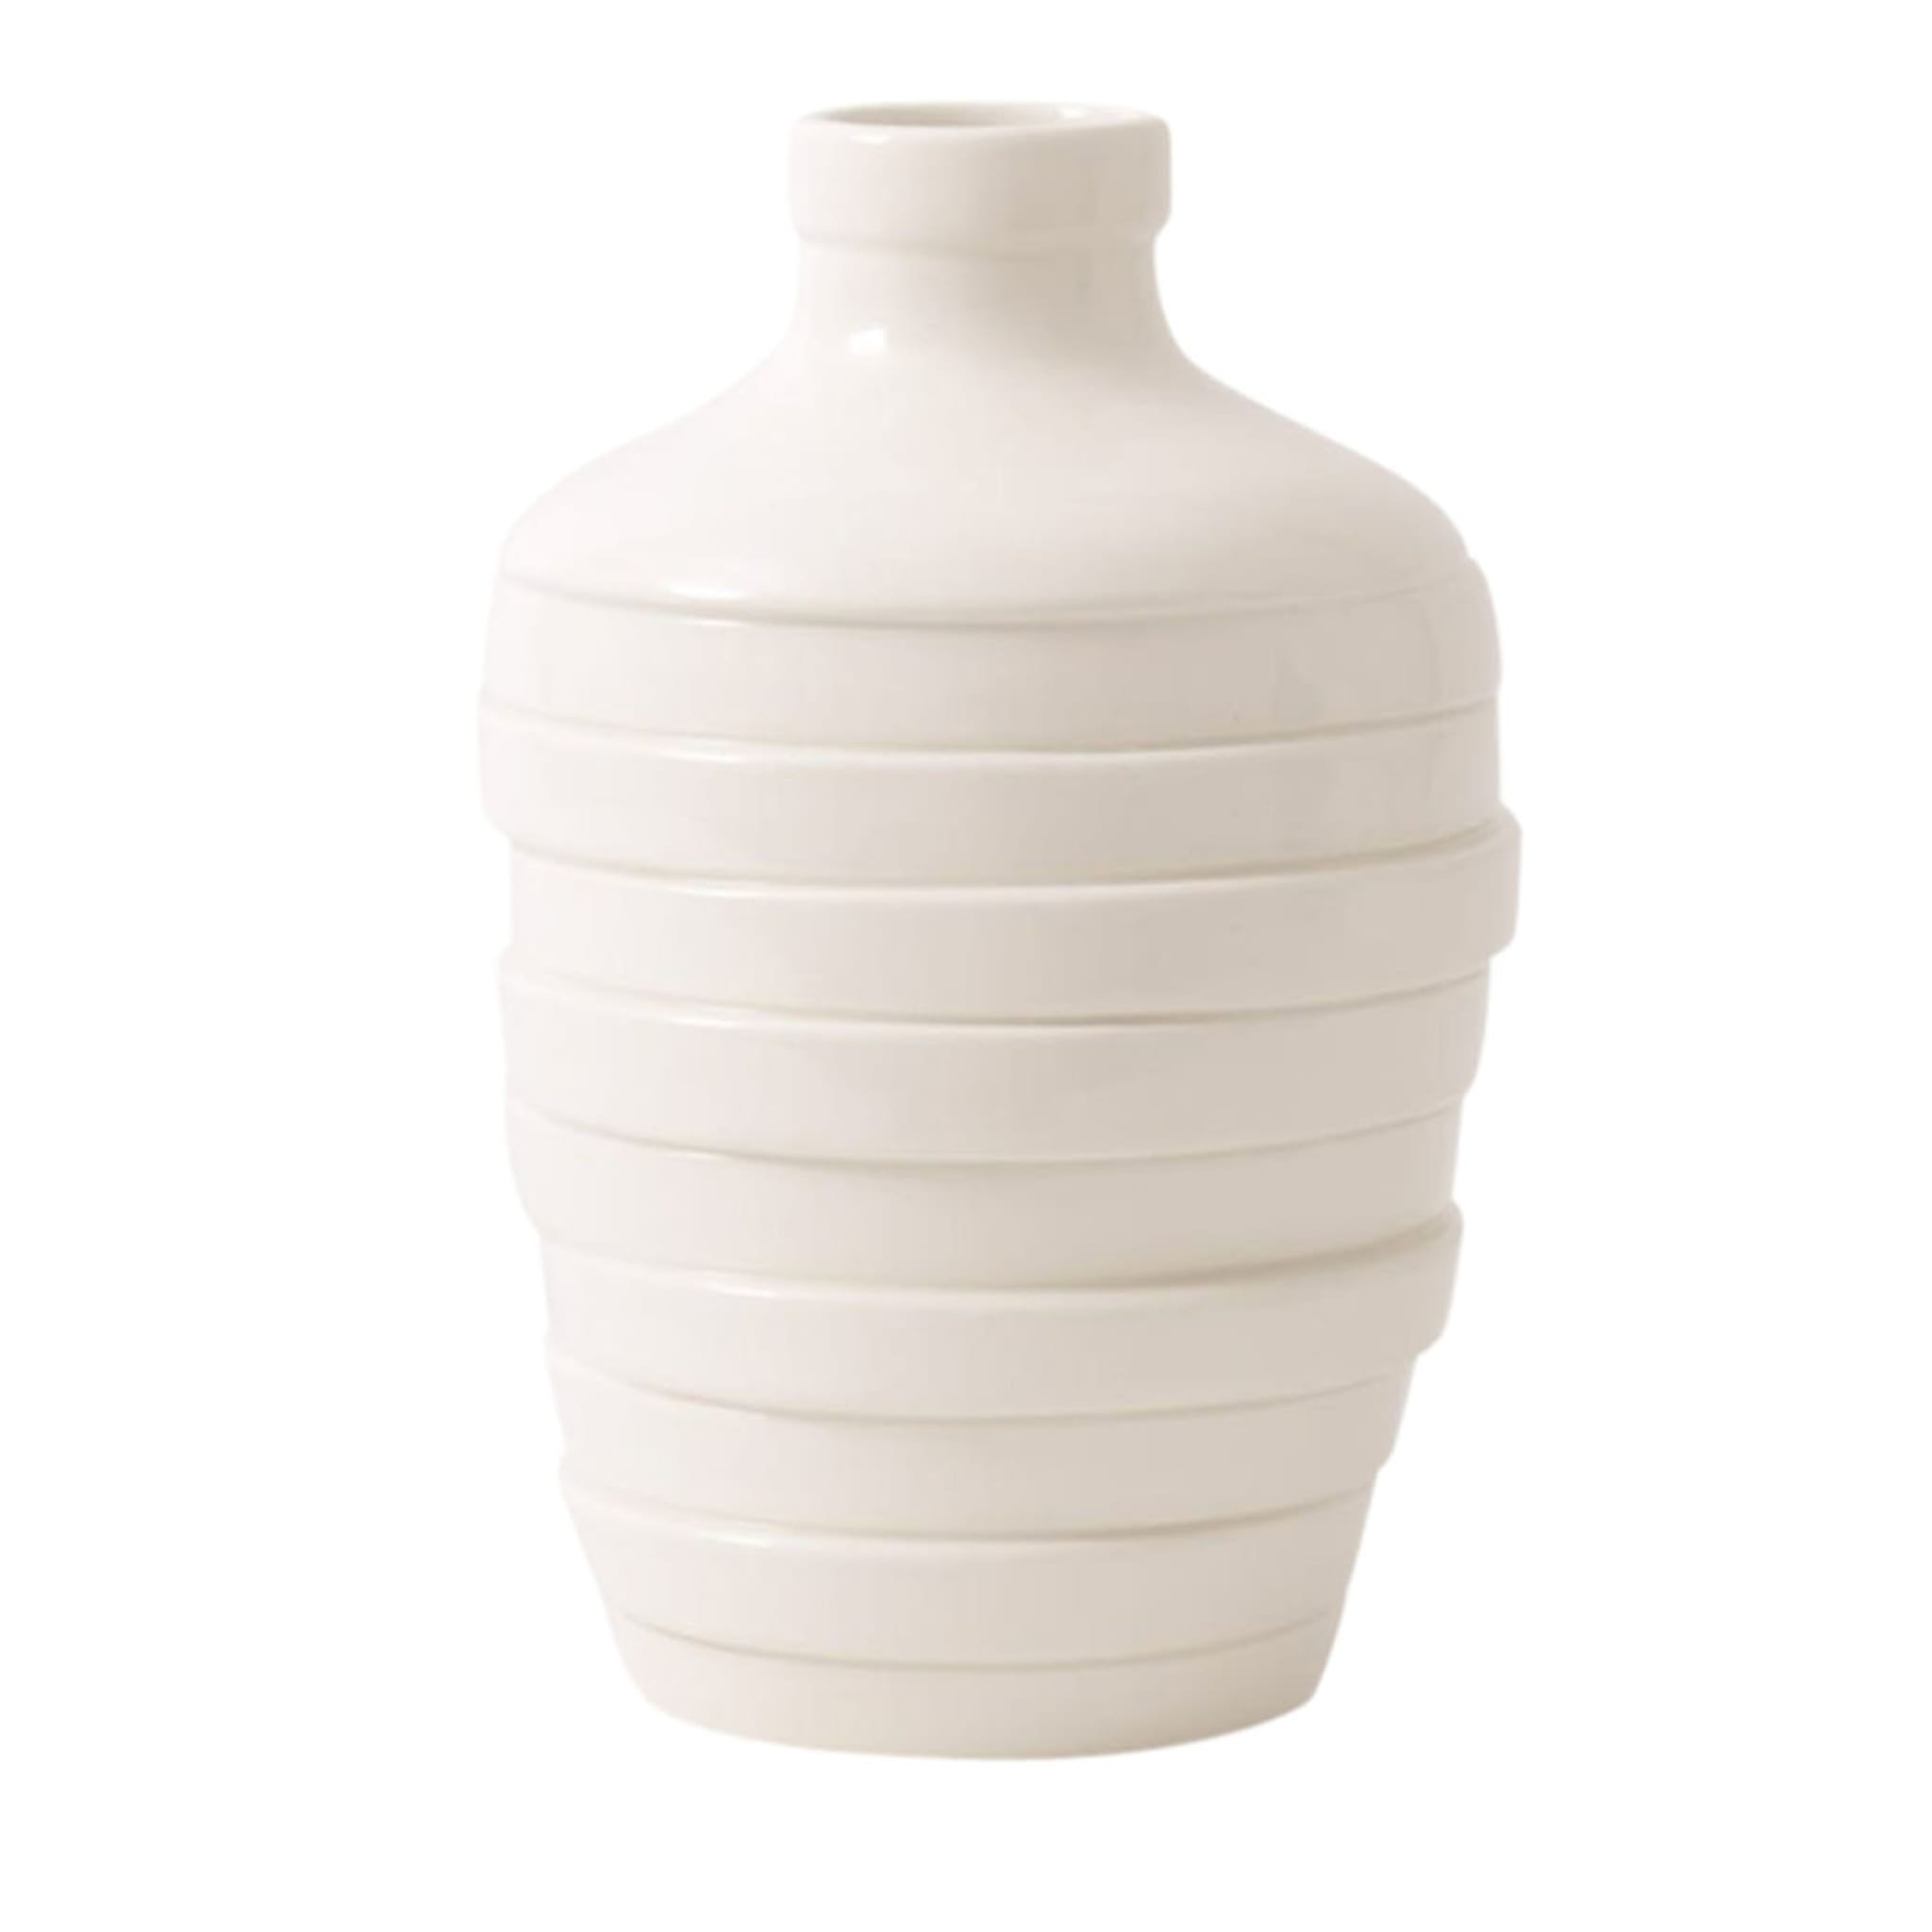 Petit vase blanc Gioia - Vue principale